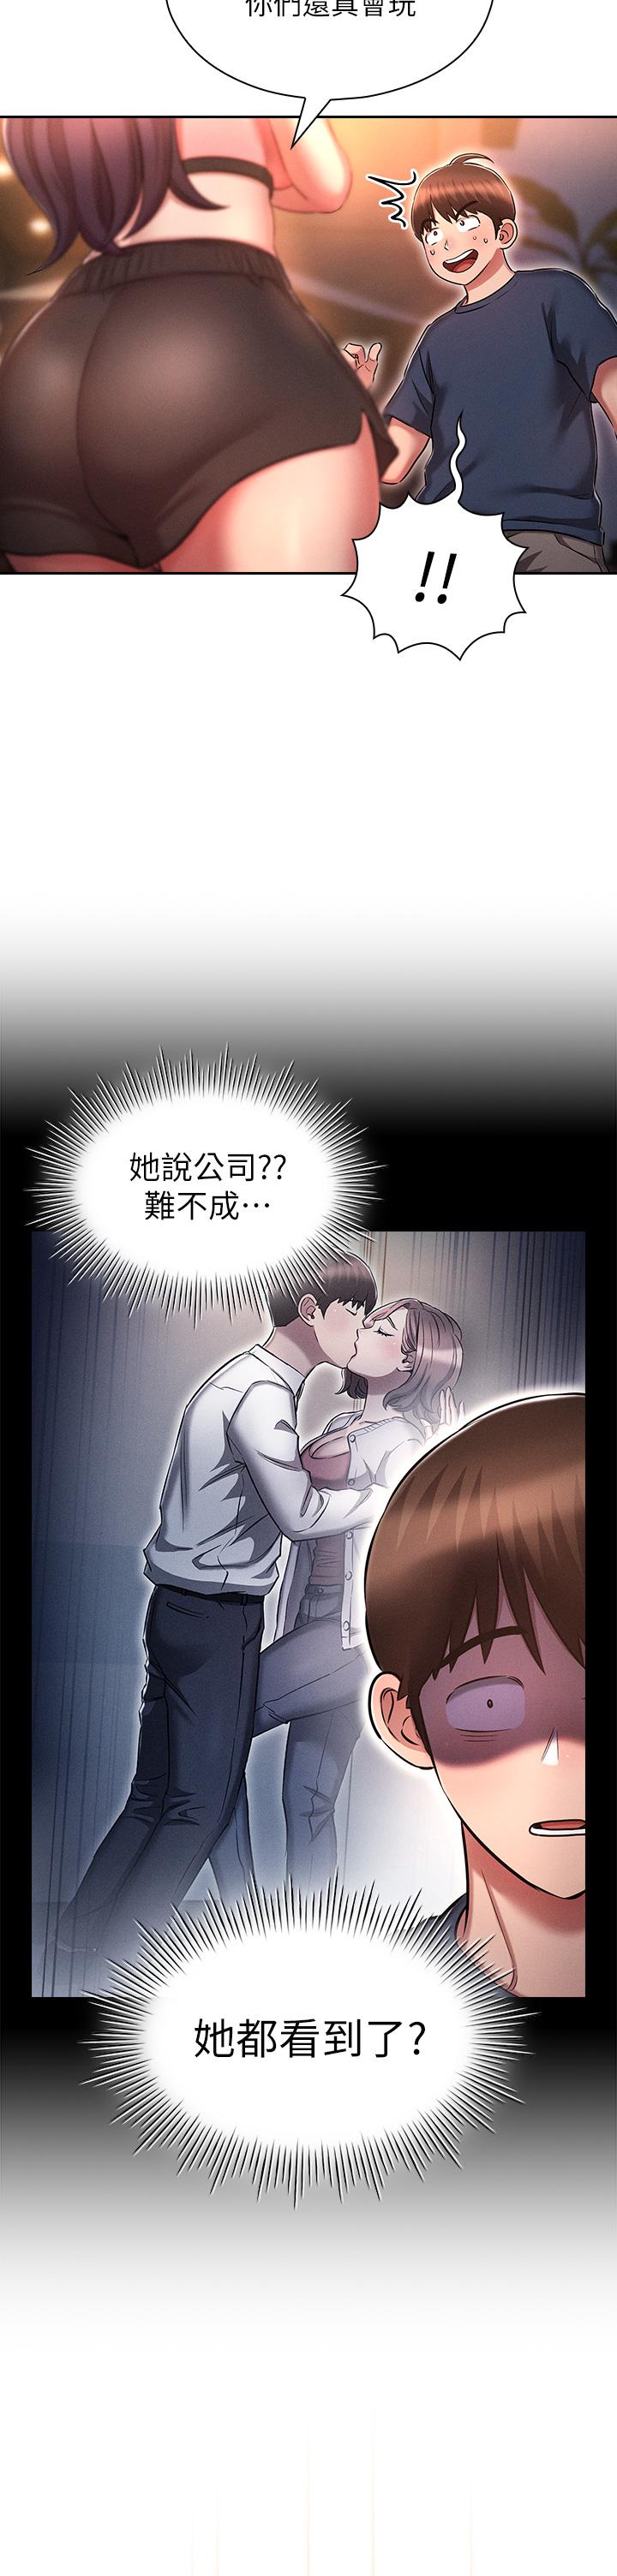 韩国污漫画 魯蛇的多重宇宙 第19话-代理的凌辱 22